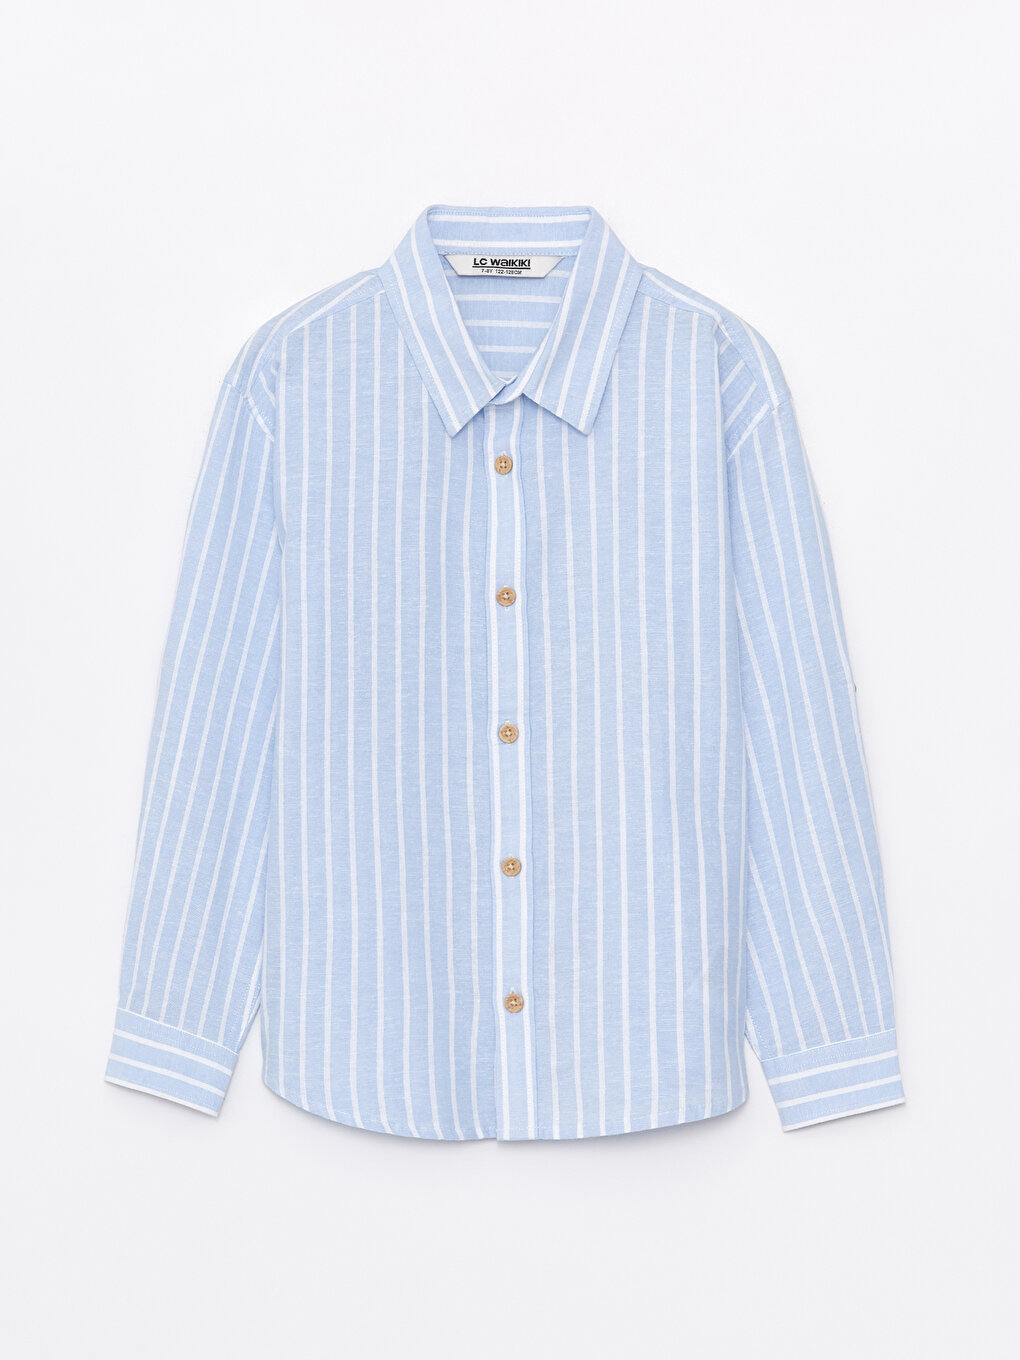 Comfy Pattern Striped Boy Shirt -S46767Z4-LEN - S46767Z4-LEN - LC 